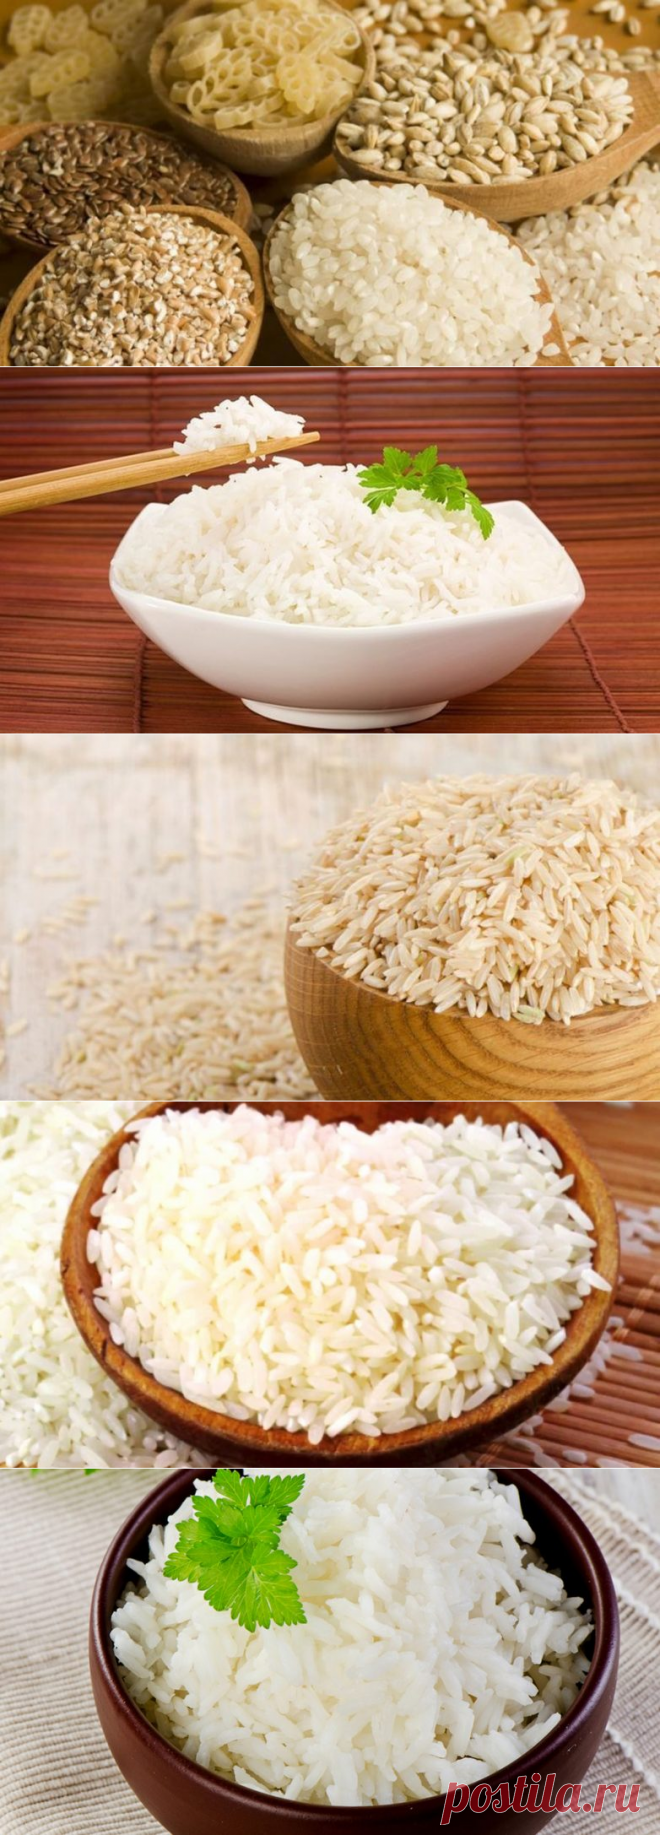 Рис каждый день. Женская каша. Ест рис. Рис есть рис.